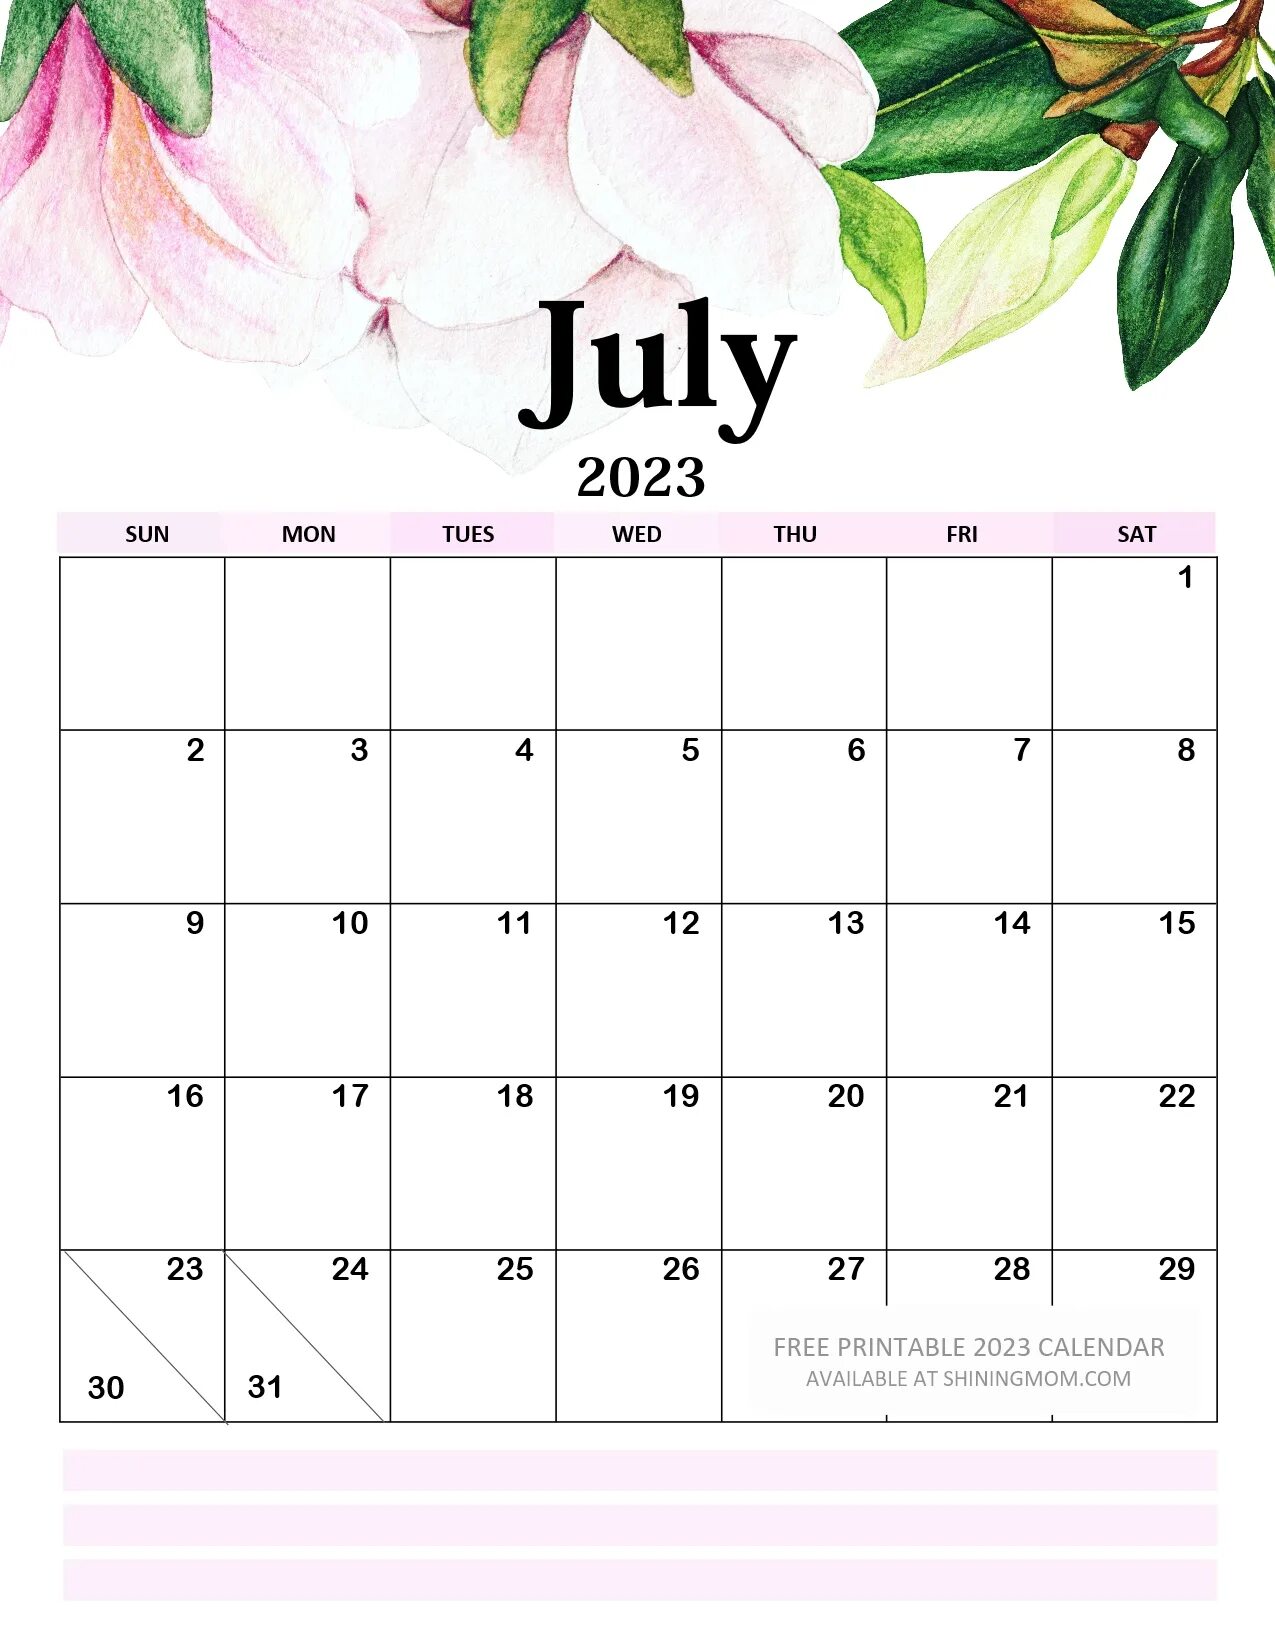 Расписание июнь 2023. Календарь 2023. Календарь 2023 июль июль. Календарик на июль 2023. Календарь июль 2023 красивый.